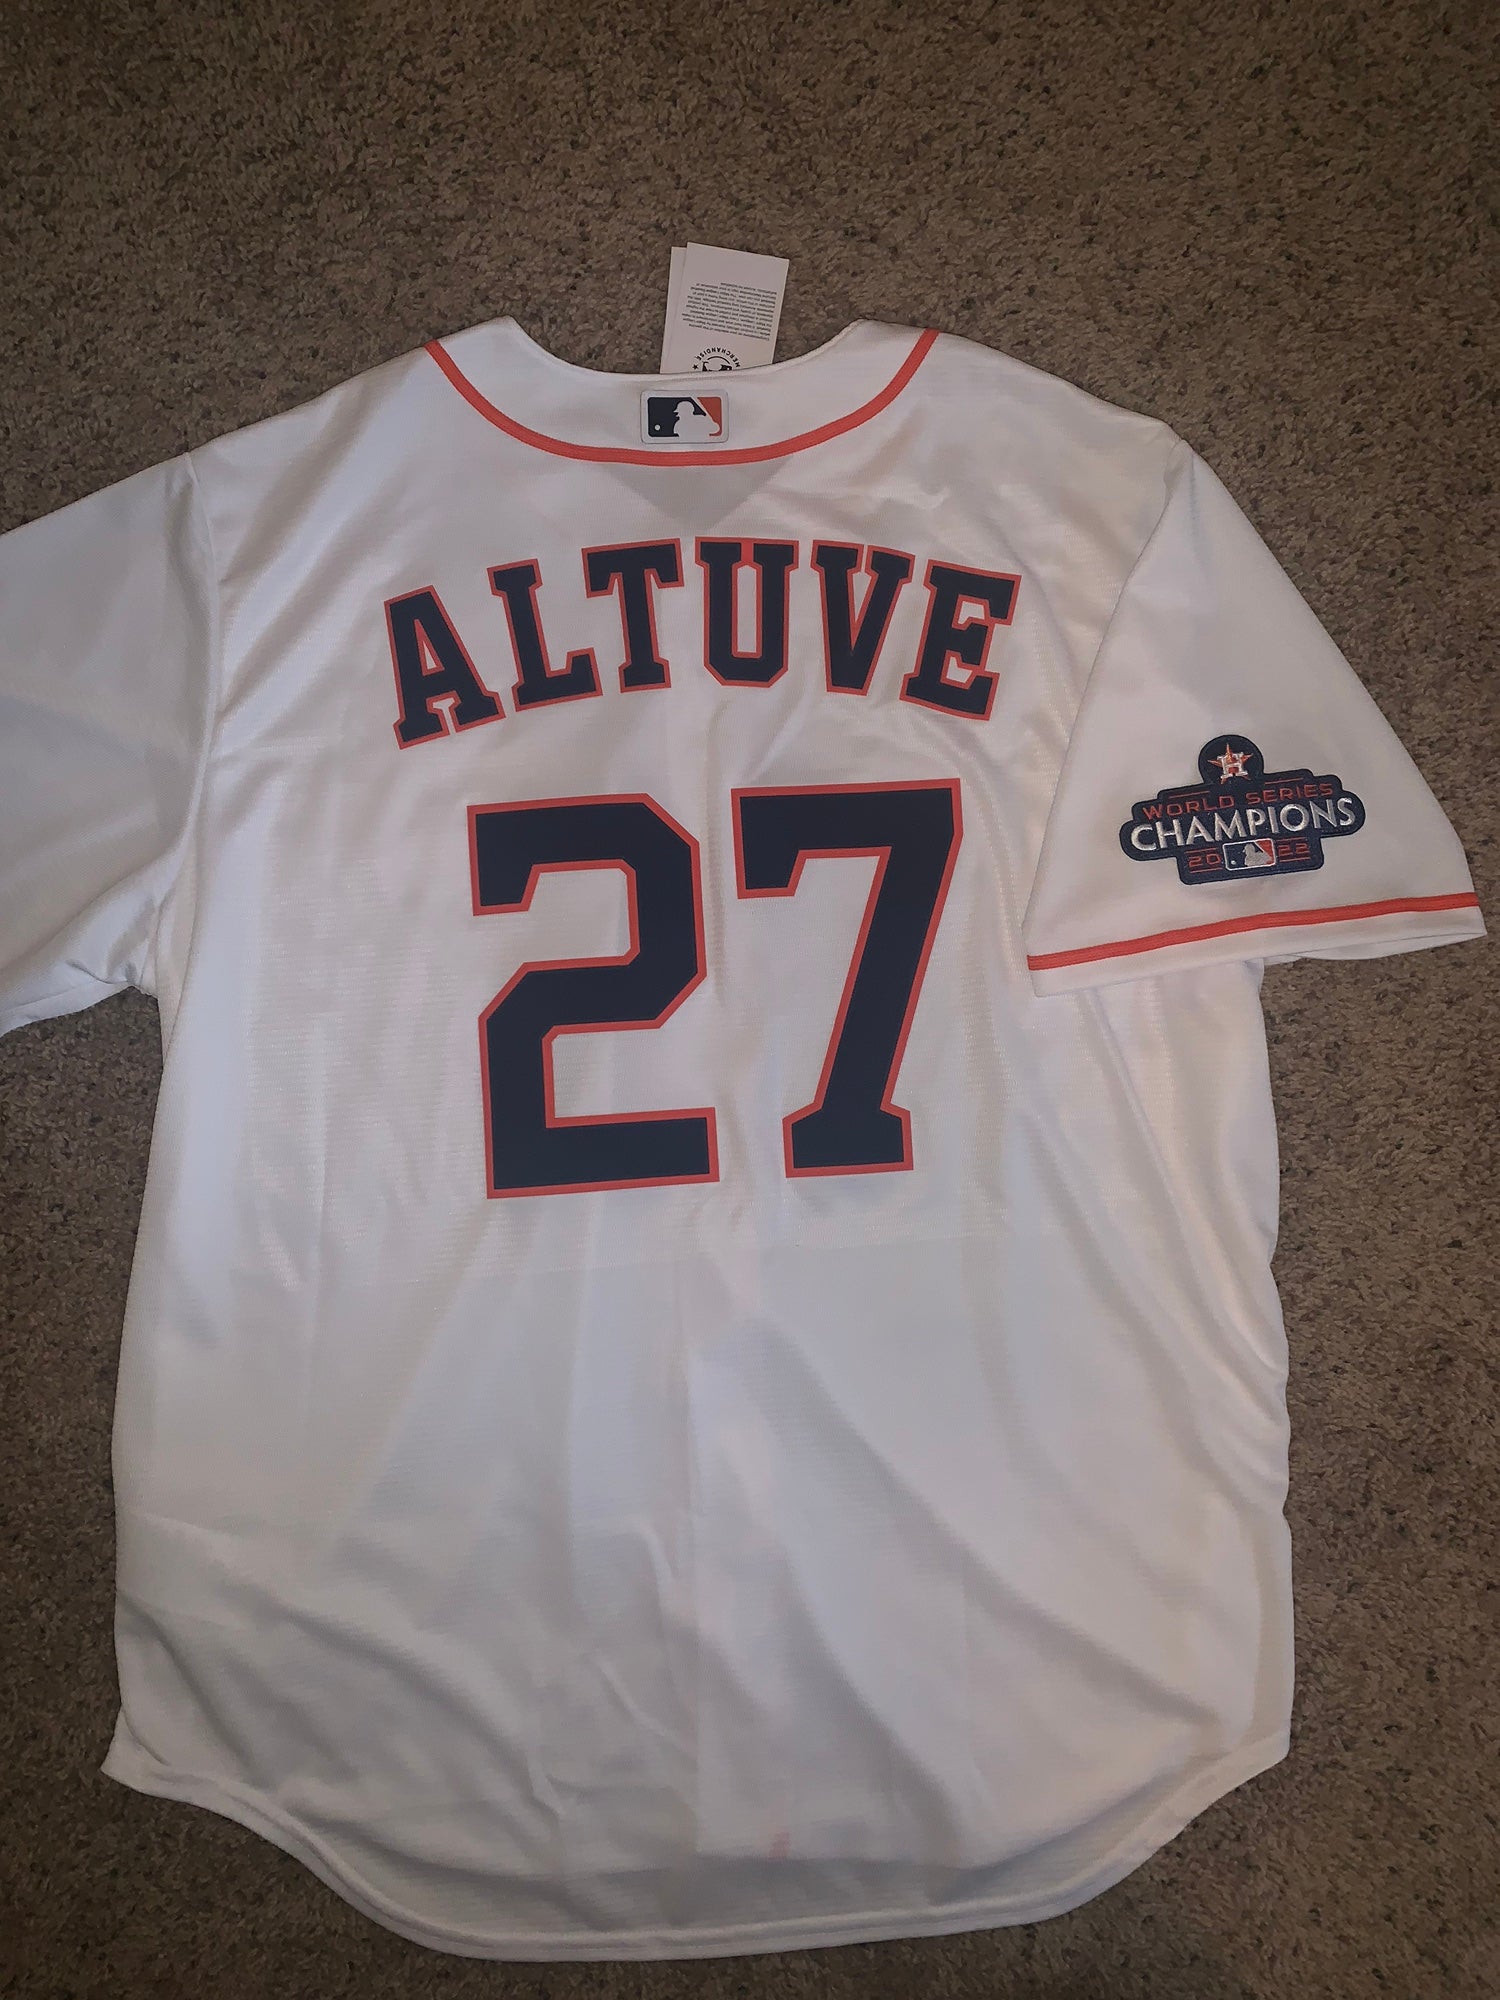 2018 American League Batting Practice Jersey - Jose Altuve - Size